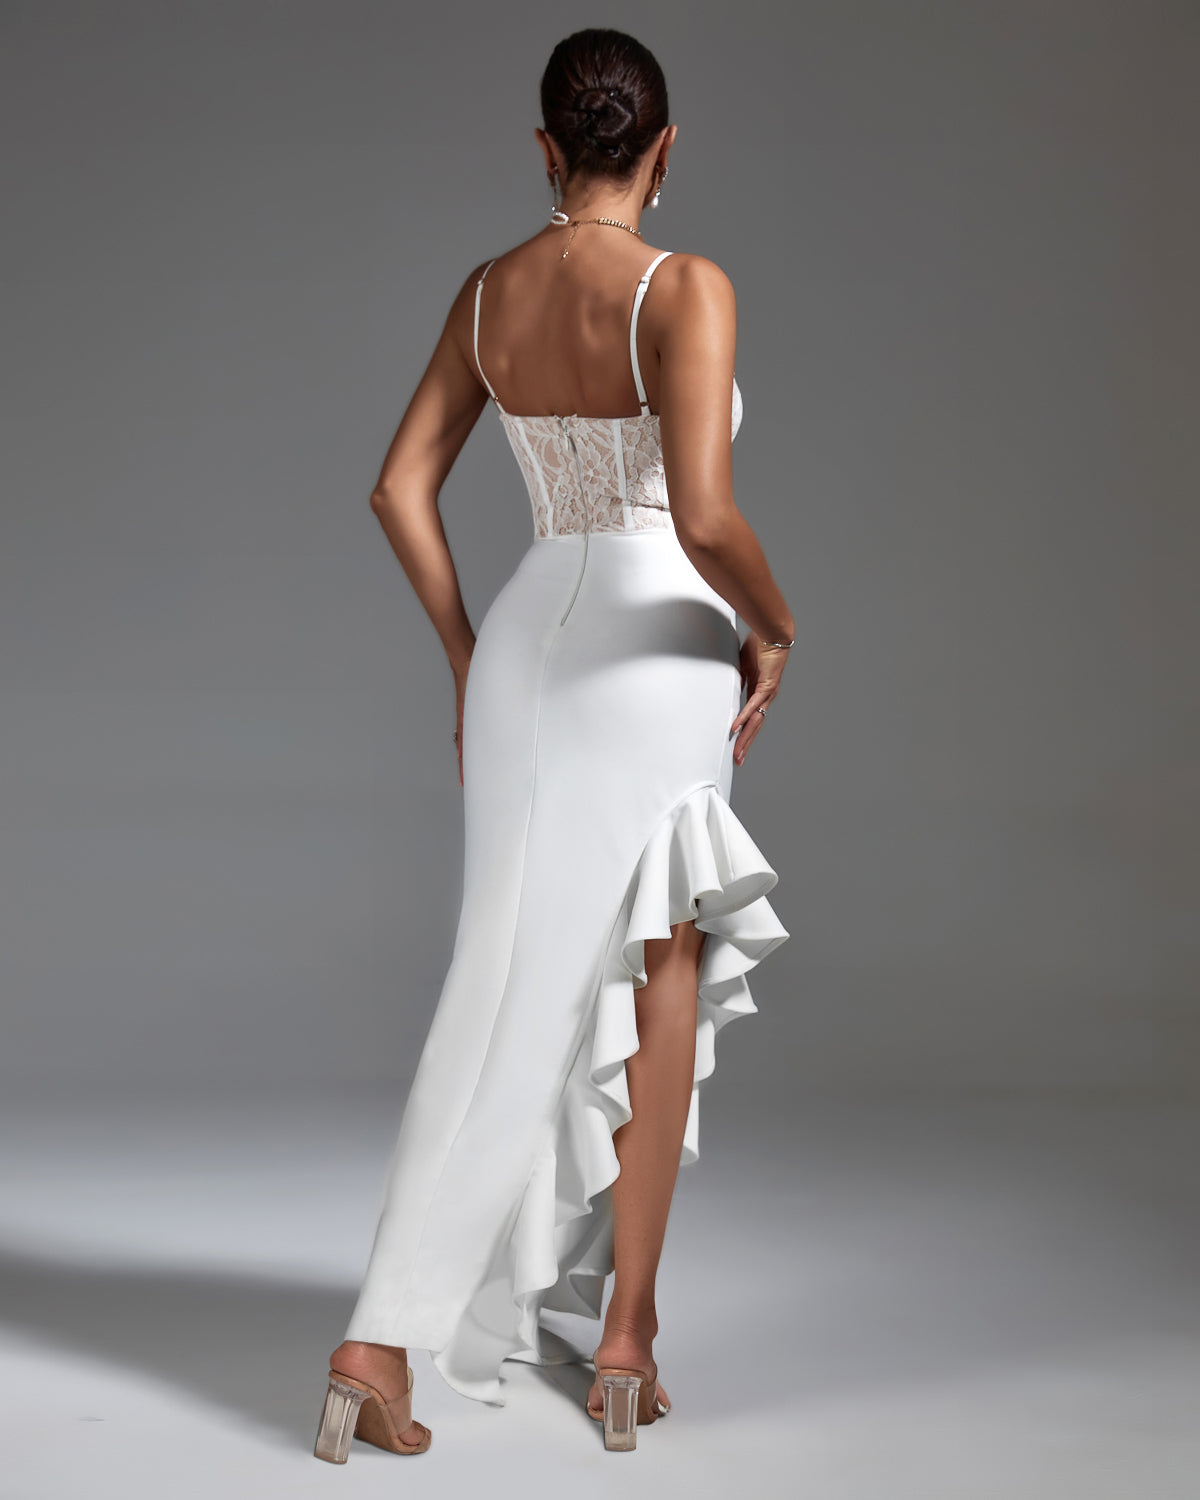 White Lace Corset & Ruffled Bandage Dress